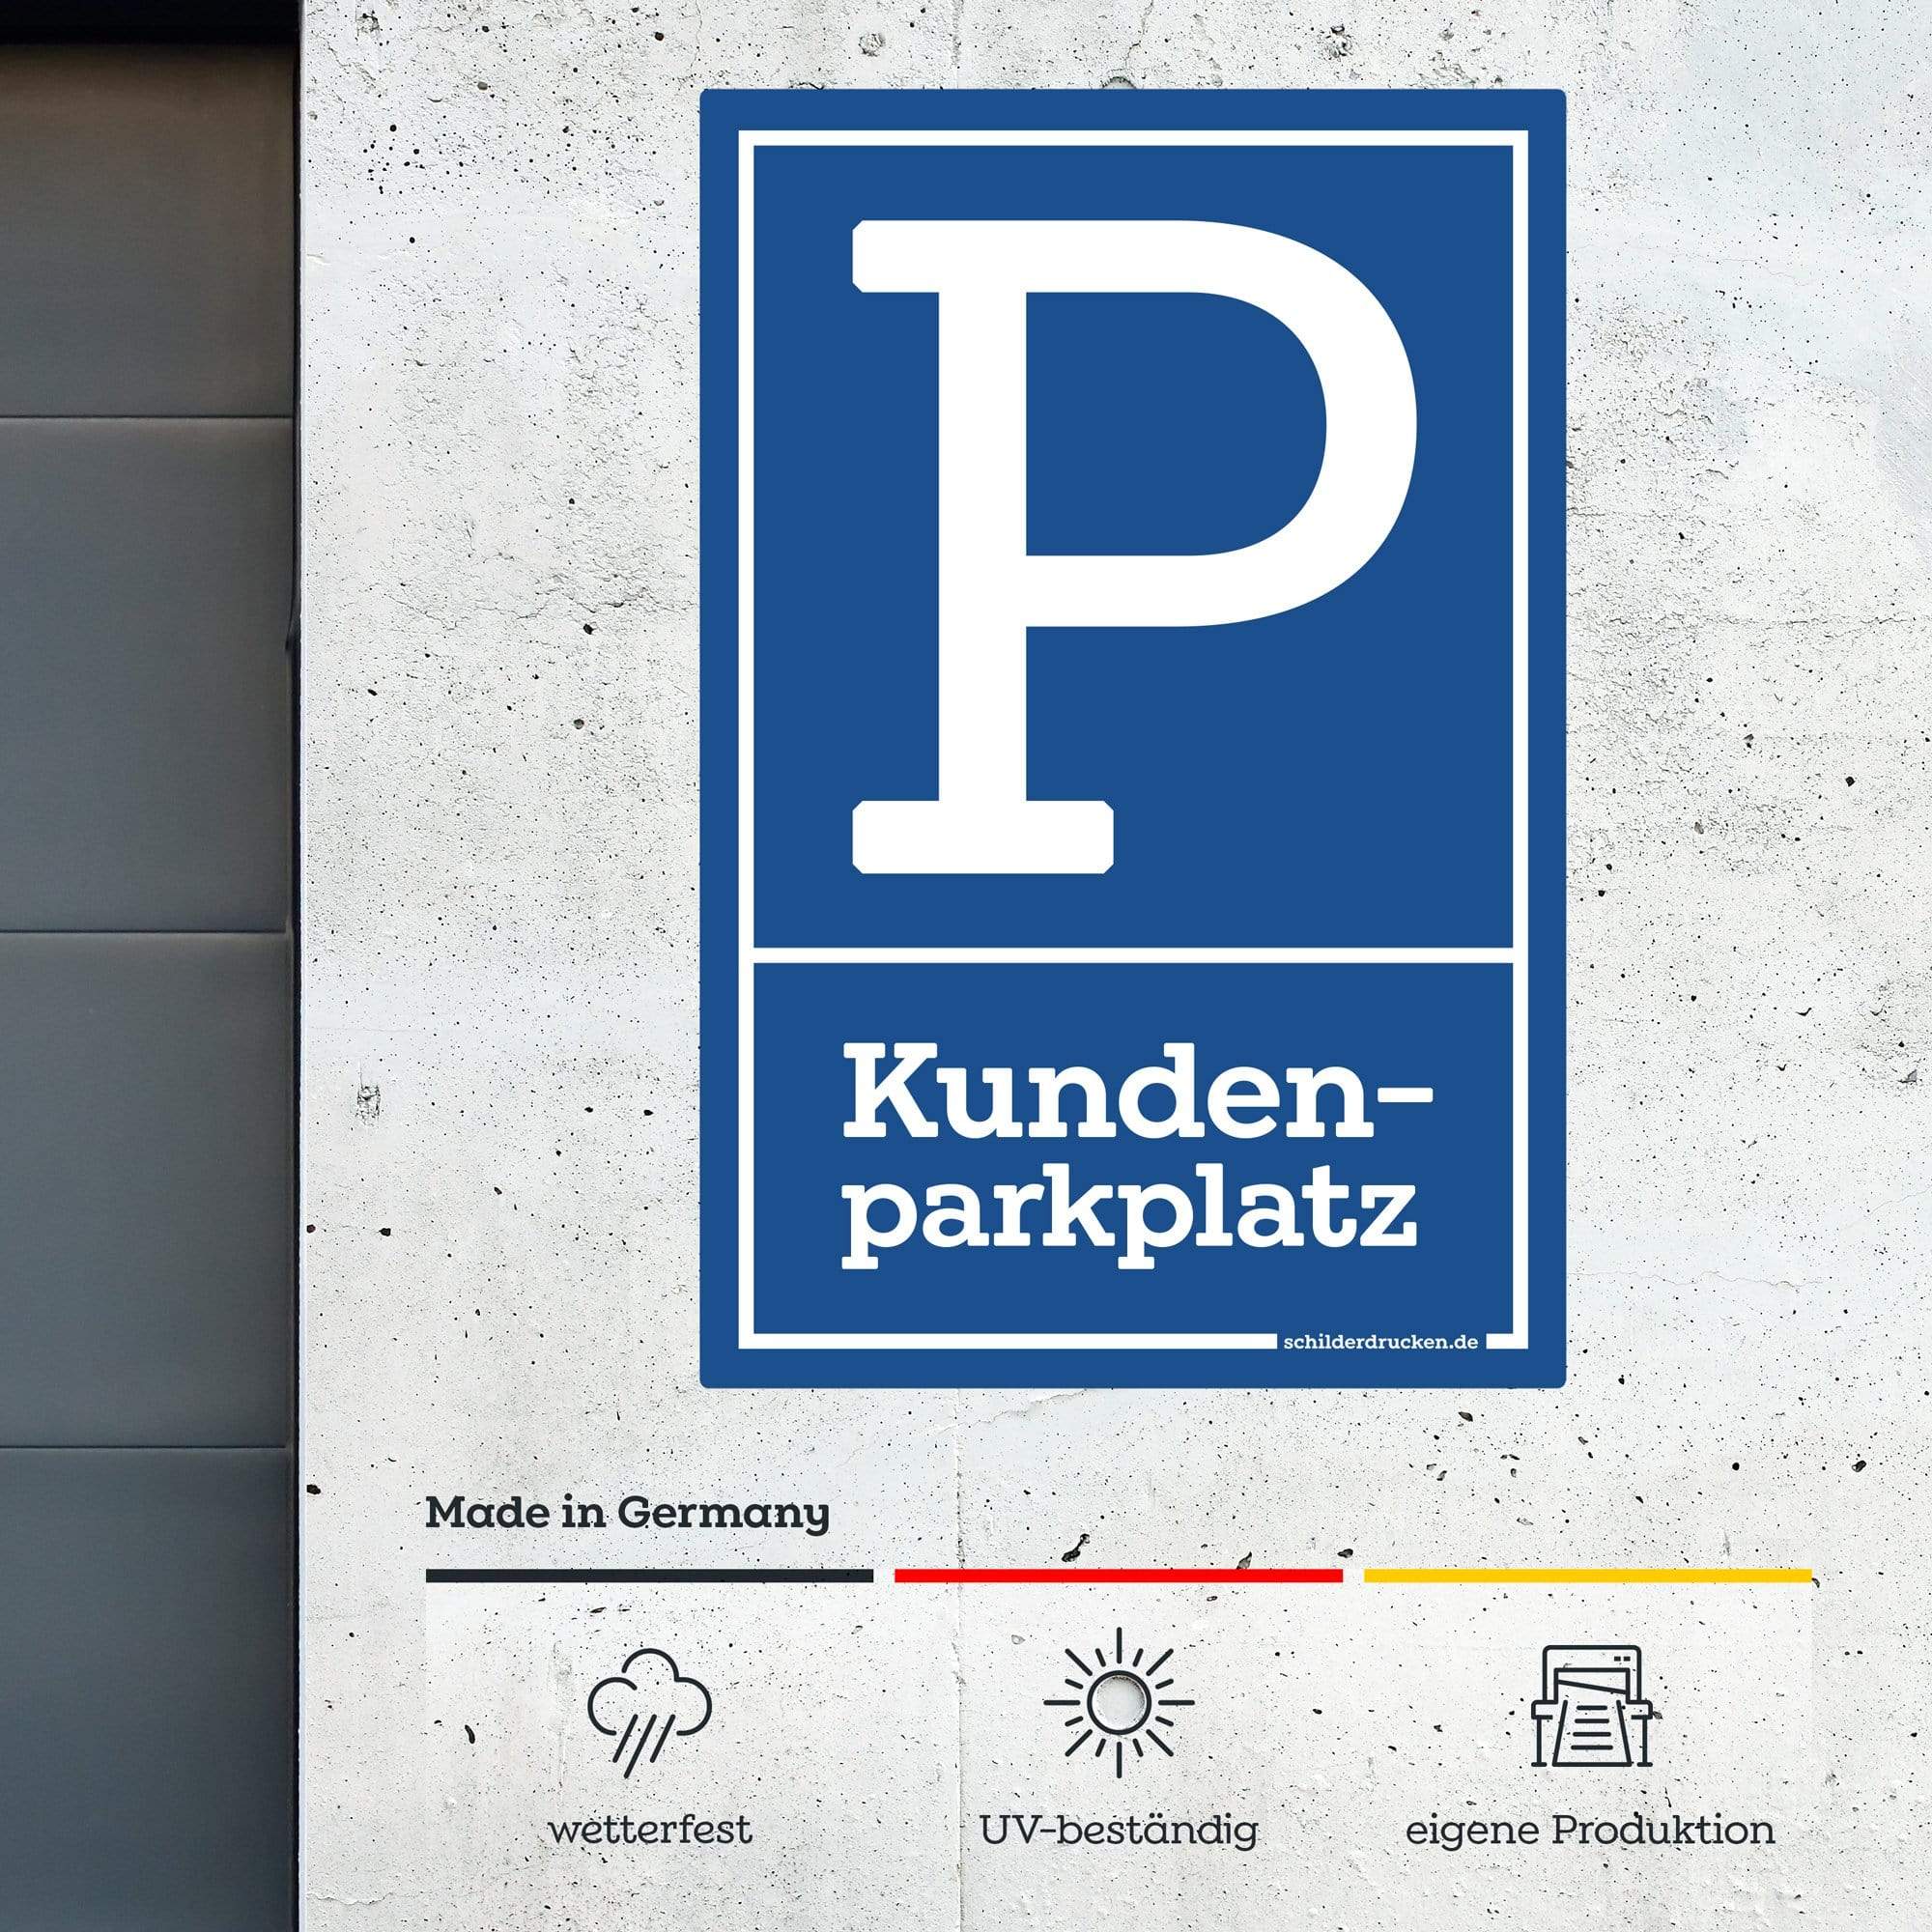 Kundenparkplatz 10 x 15 cm / weiss / Alu-Dibond online drucken lassen bei schilderdrucken.de